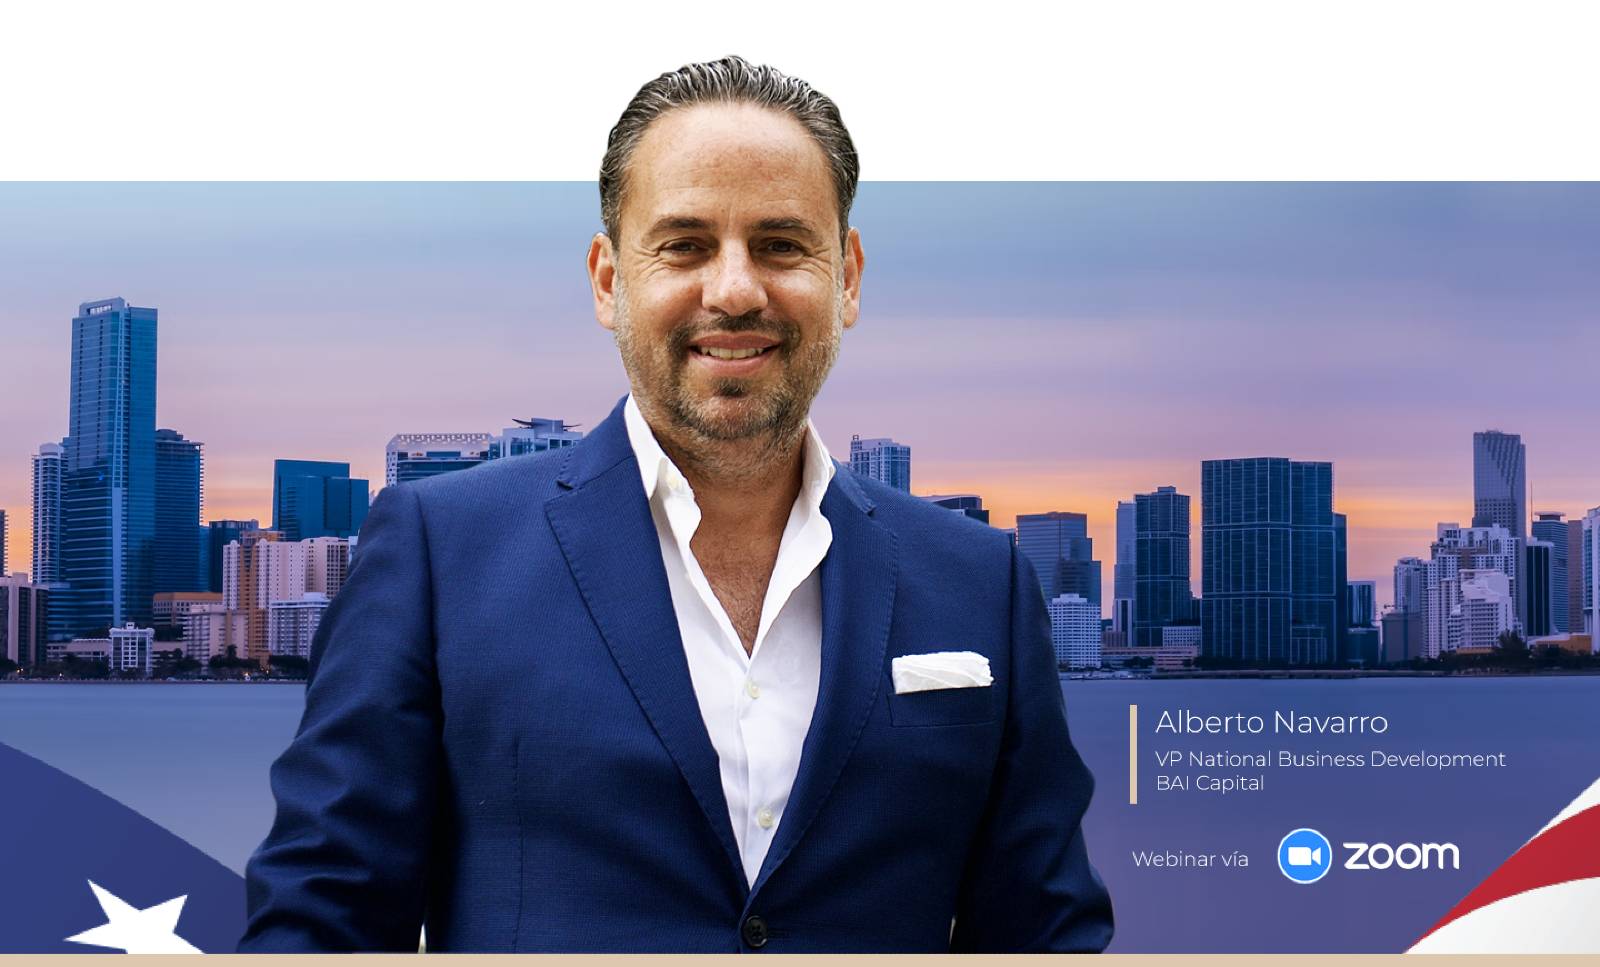 BAI Capital Alberto Navarro Miami Webinar